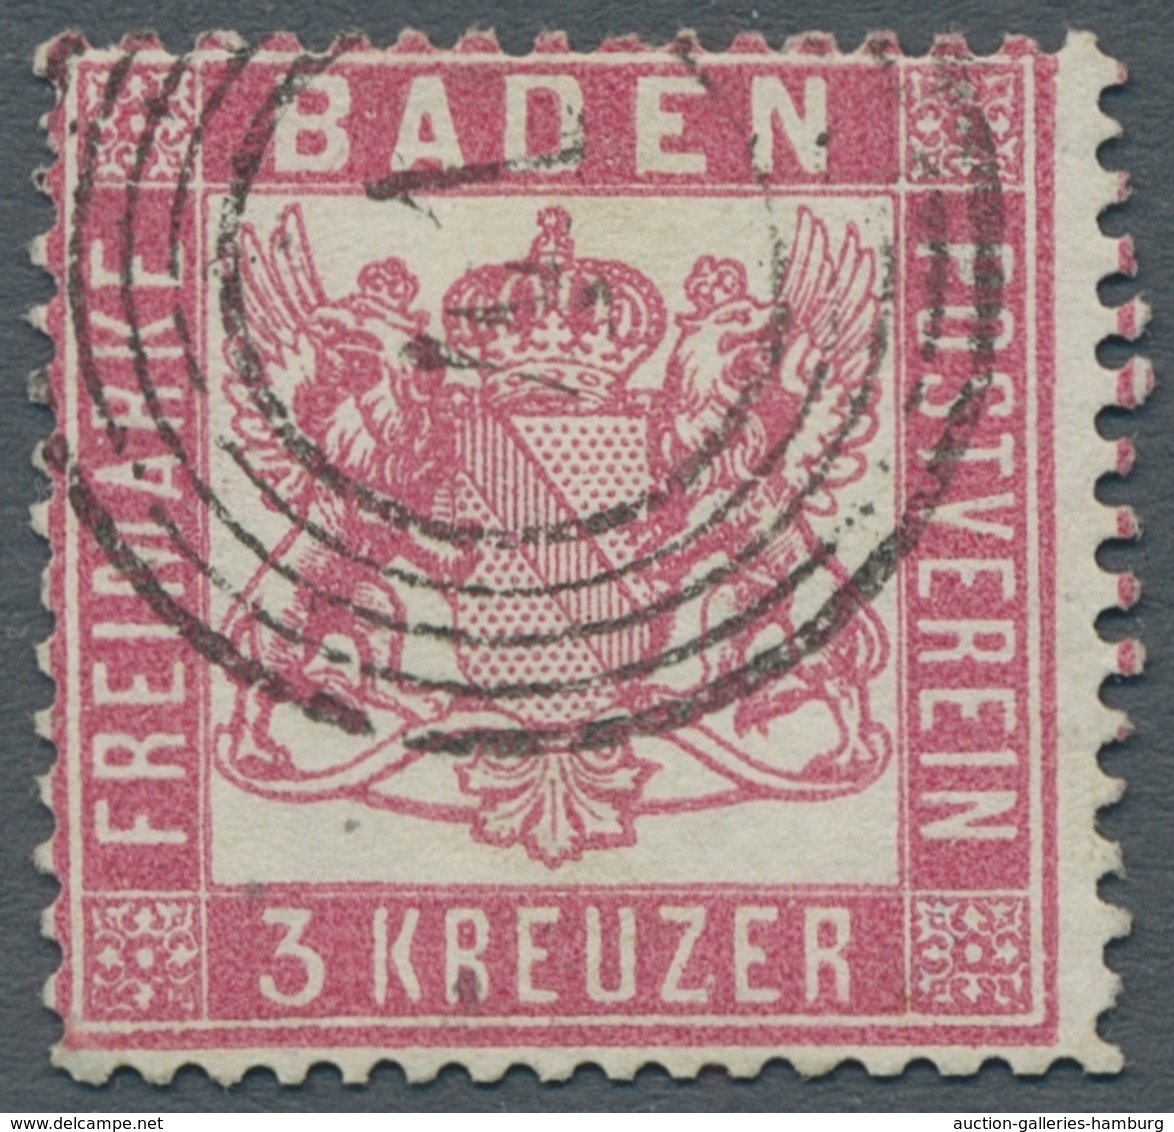 Altdeutschland: 1850-1920 ca. umfangreiche alte Sammlung in unterschiedlicher Erhaltung aller Gebiet